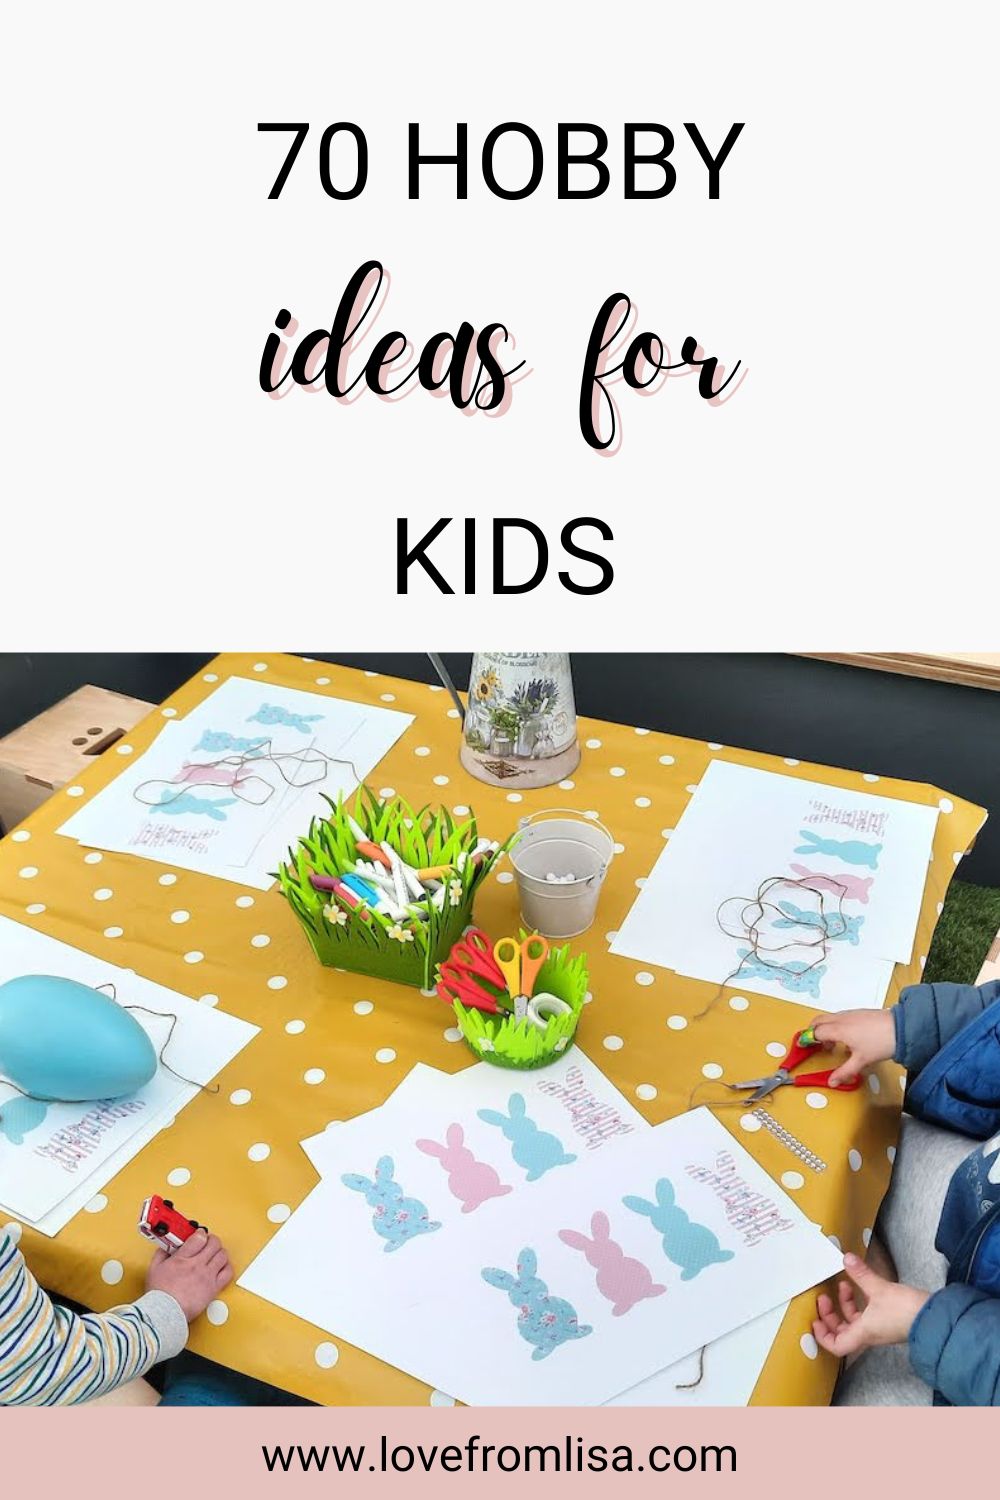 70 hobby ideas for kids